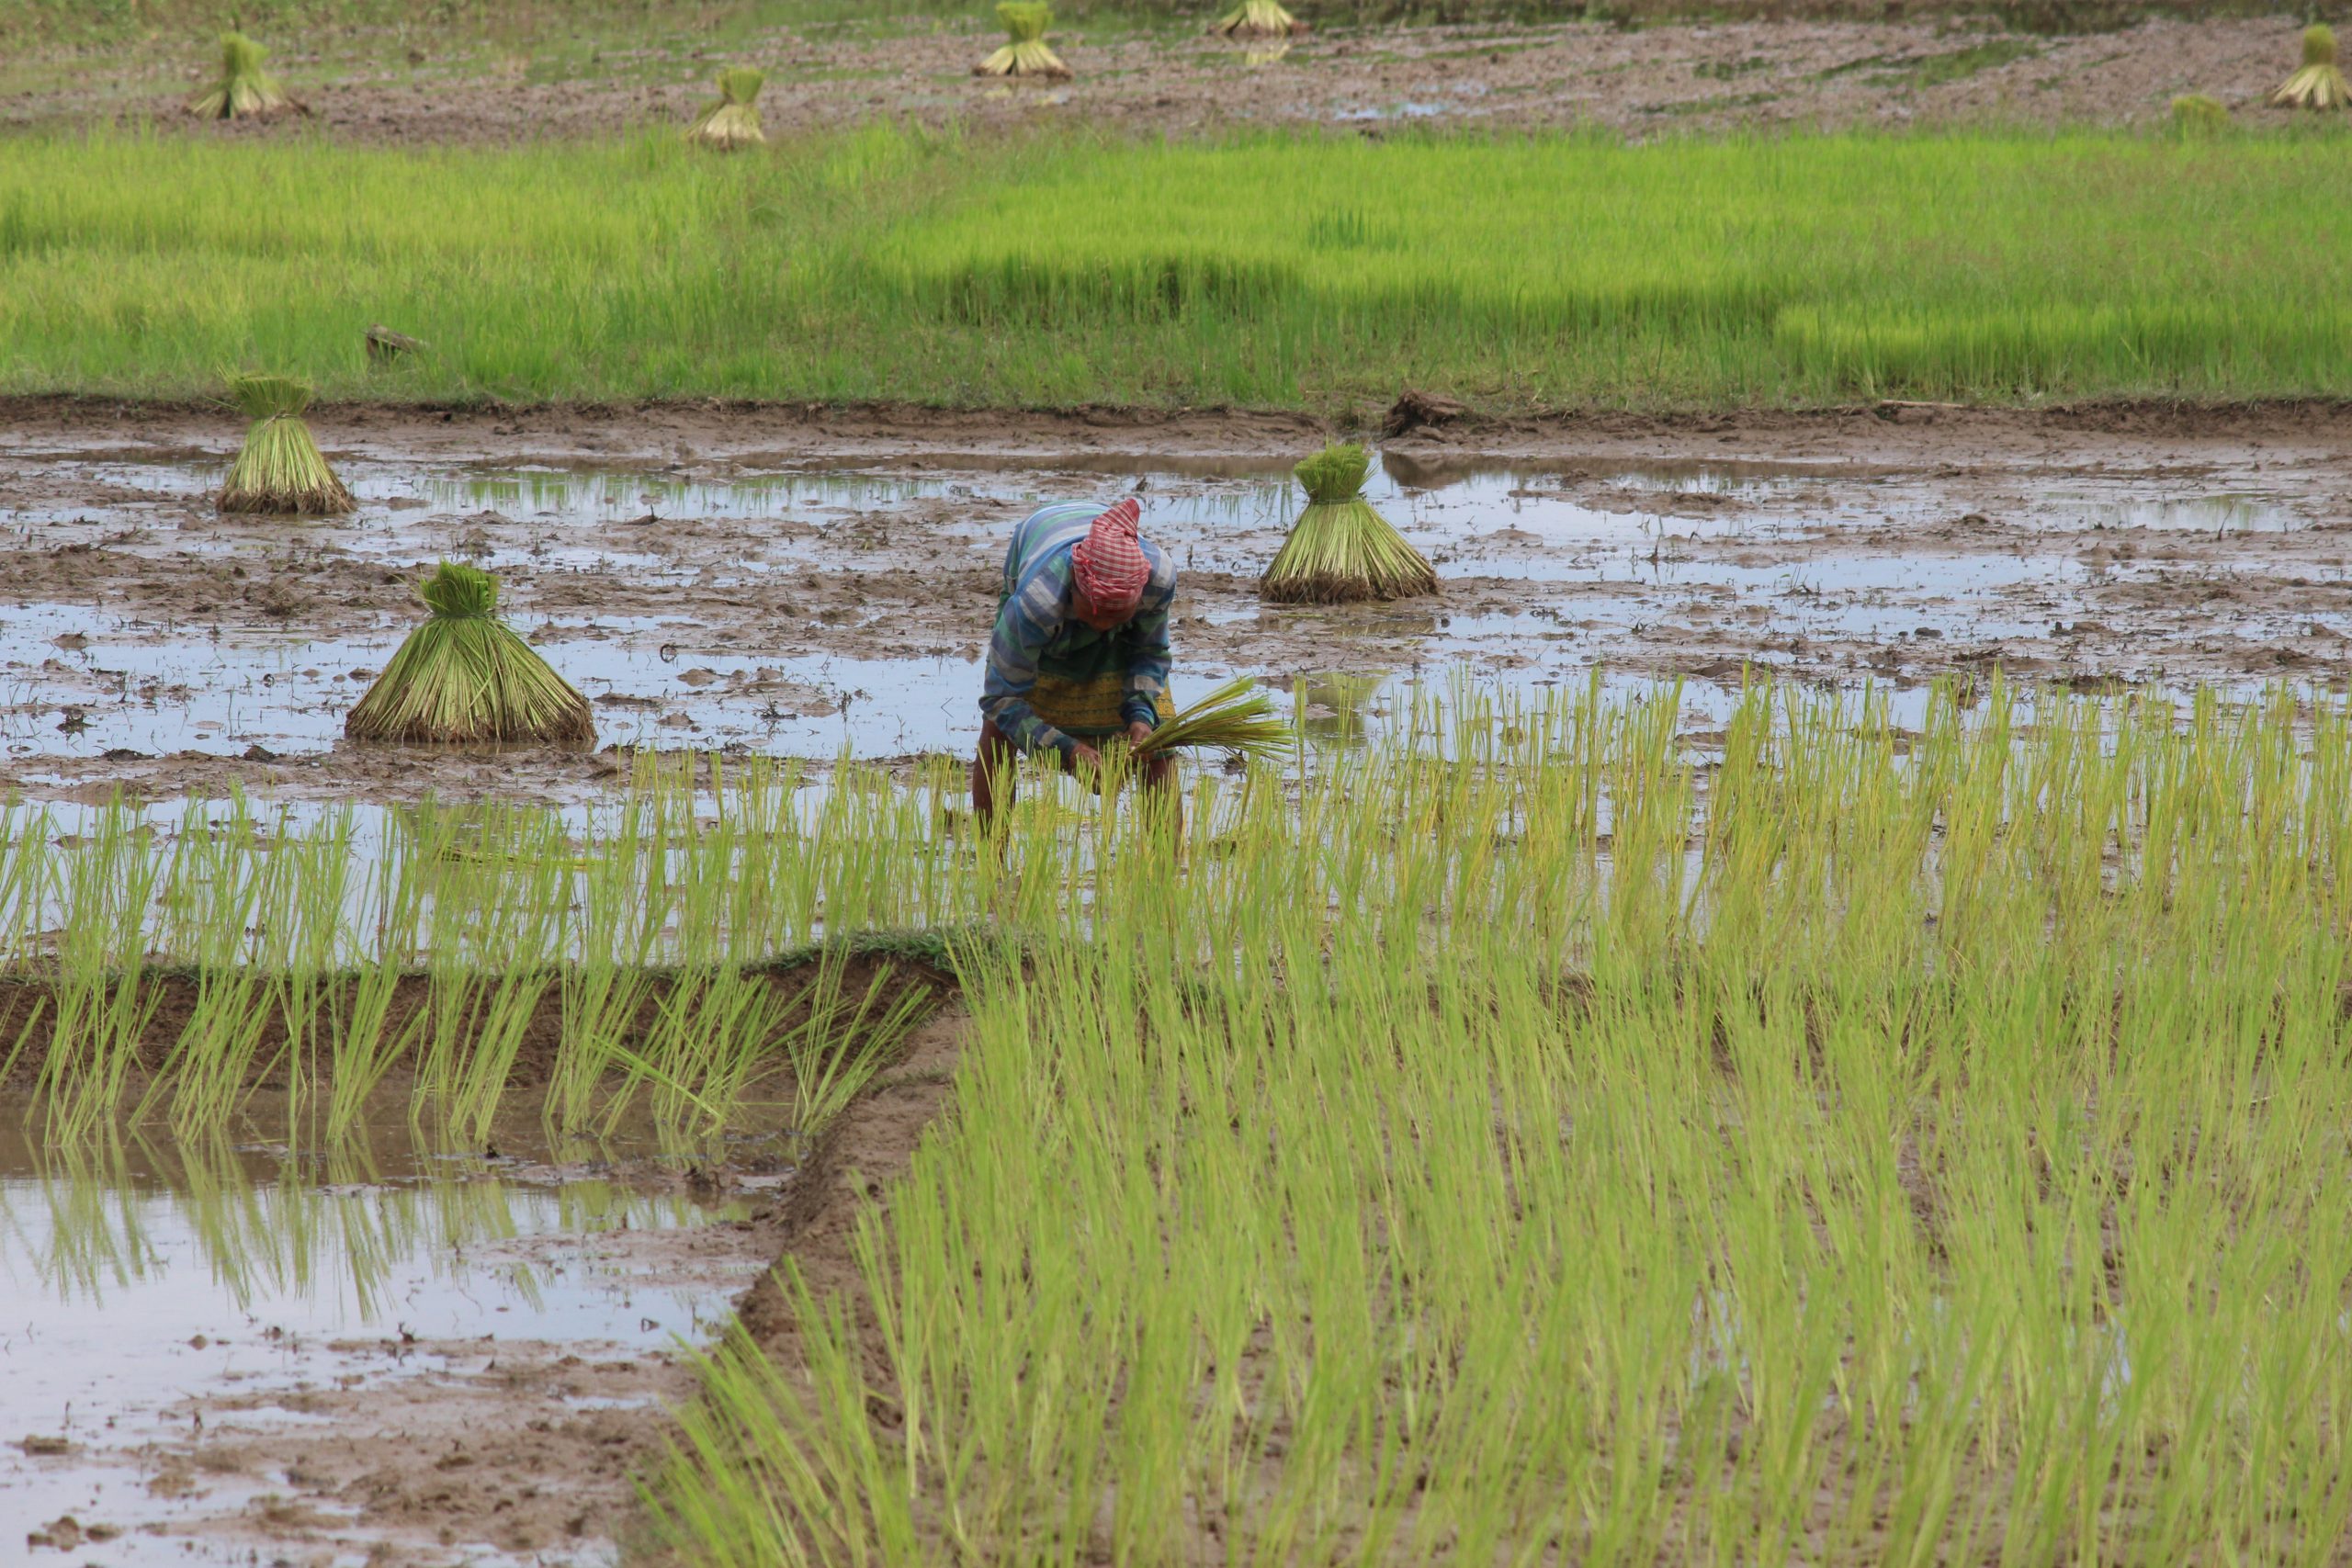 A lady farmer in paddy field